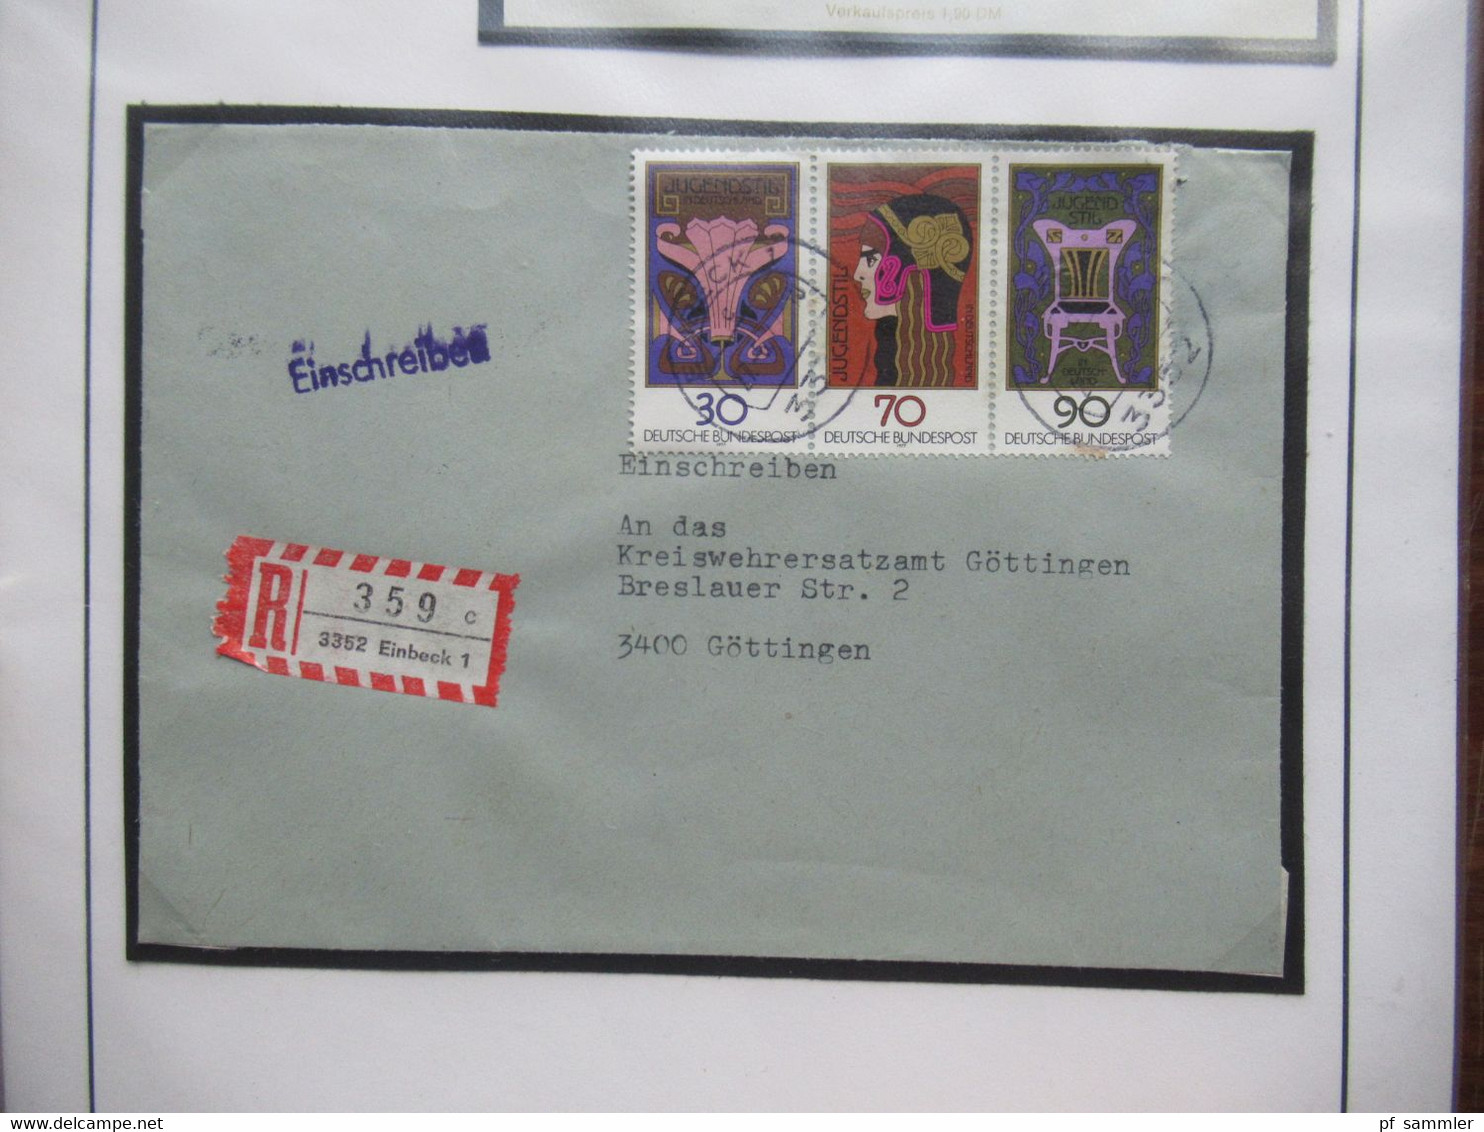 BRD / BUND Sammlung gestempelte Marken und die jeweiligen Belege im dicken Ordner /  Stöberposten! 1977